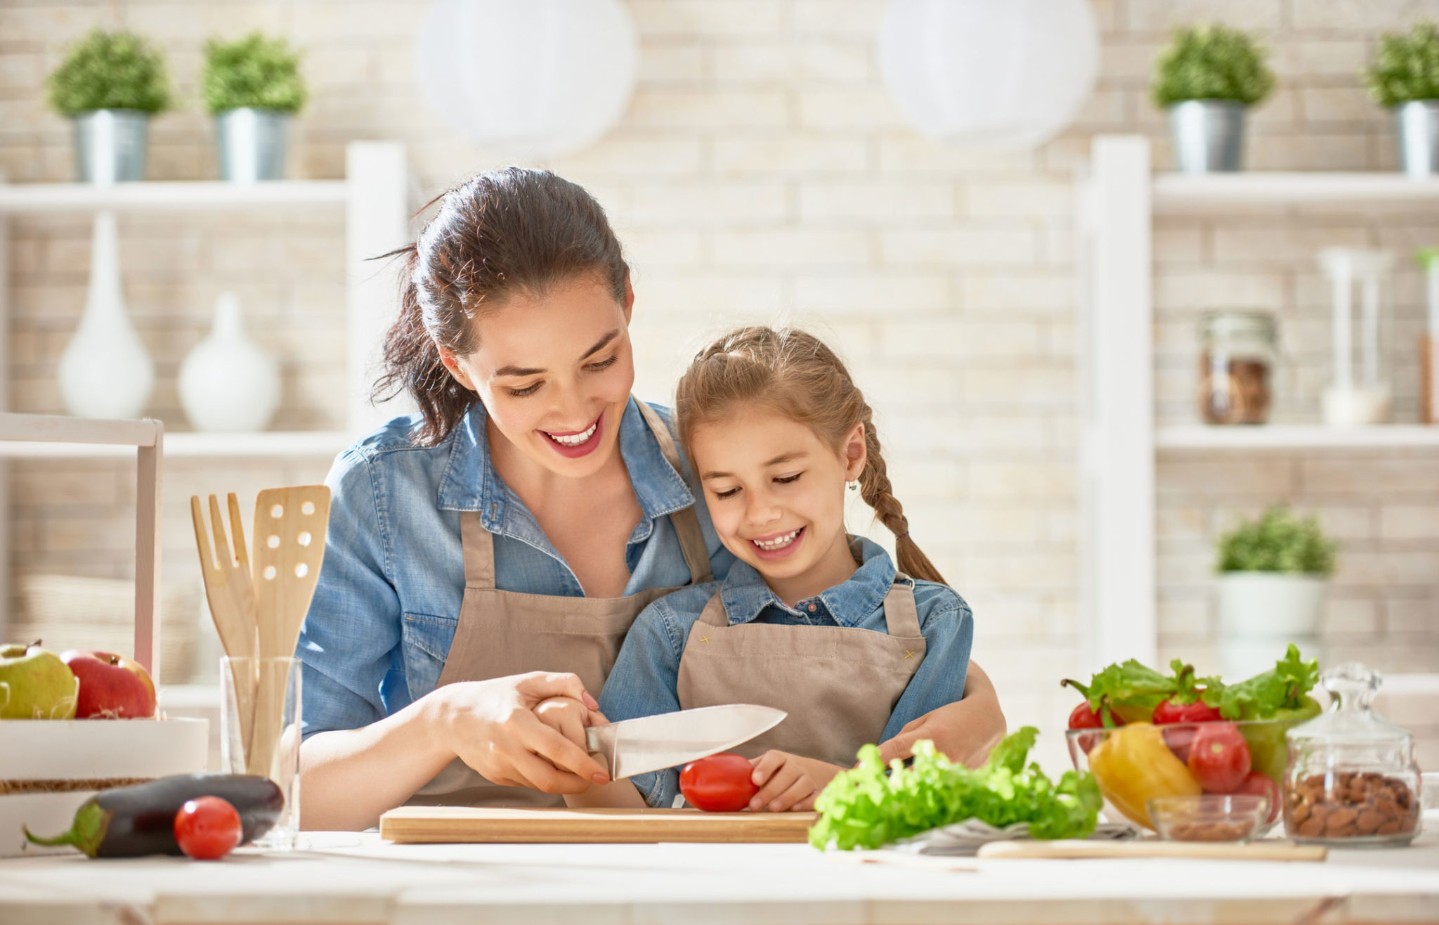 mom-girl-vegetables-eating-healthy||mom-girl-vegetables-eating-healthy||school lunch